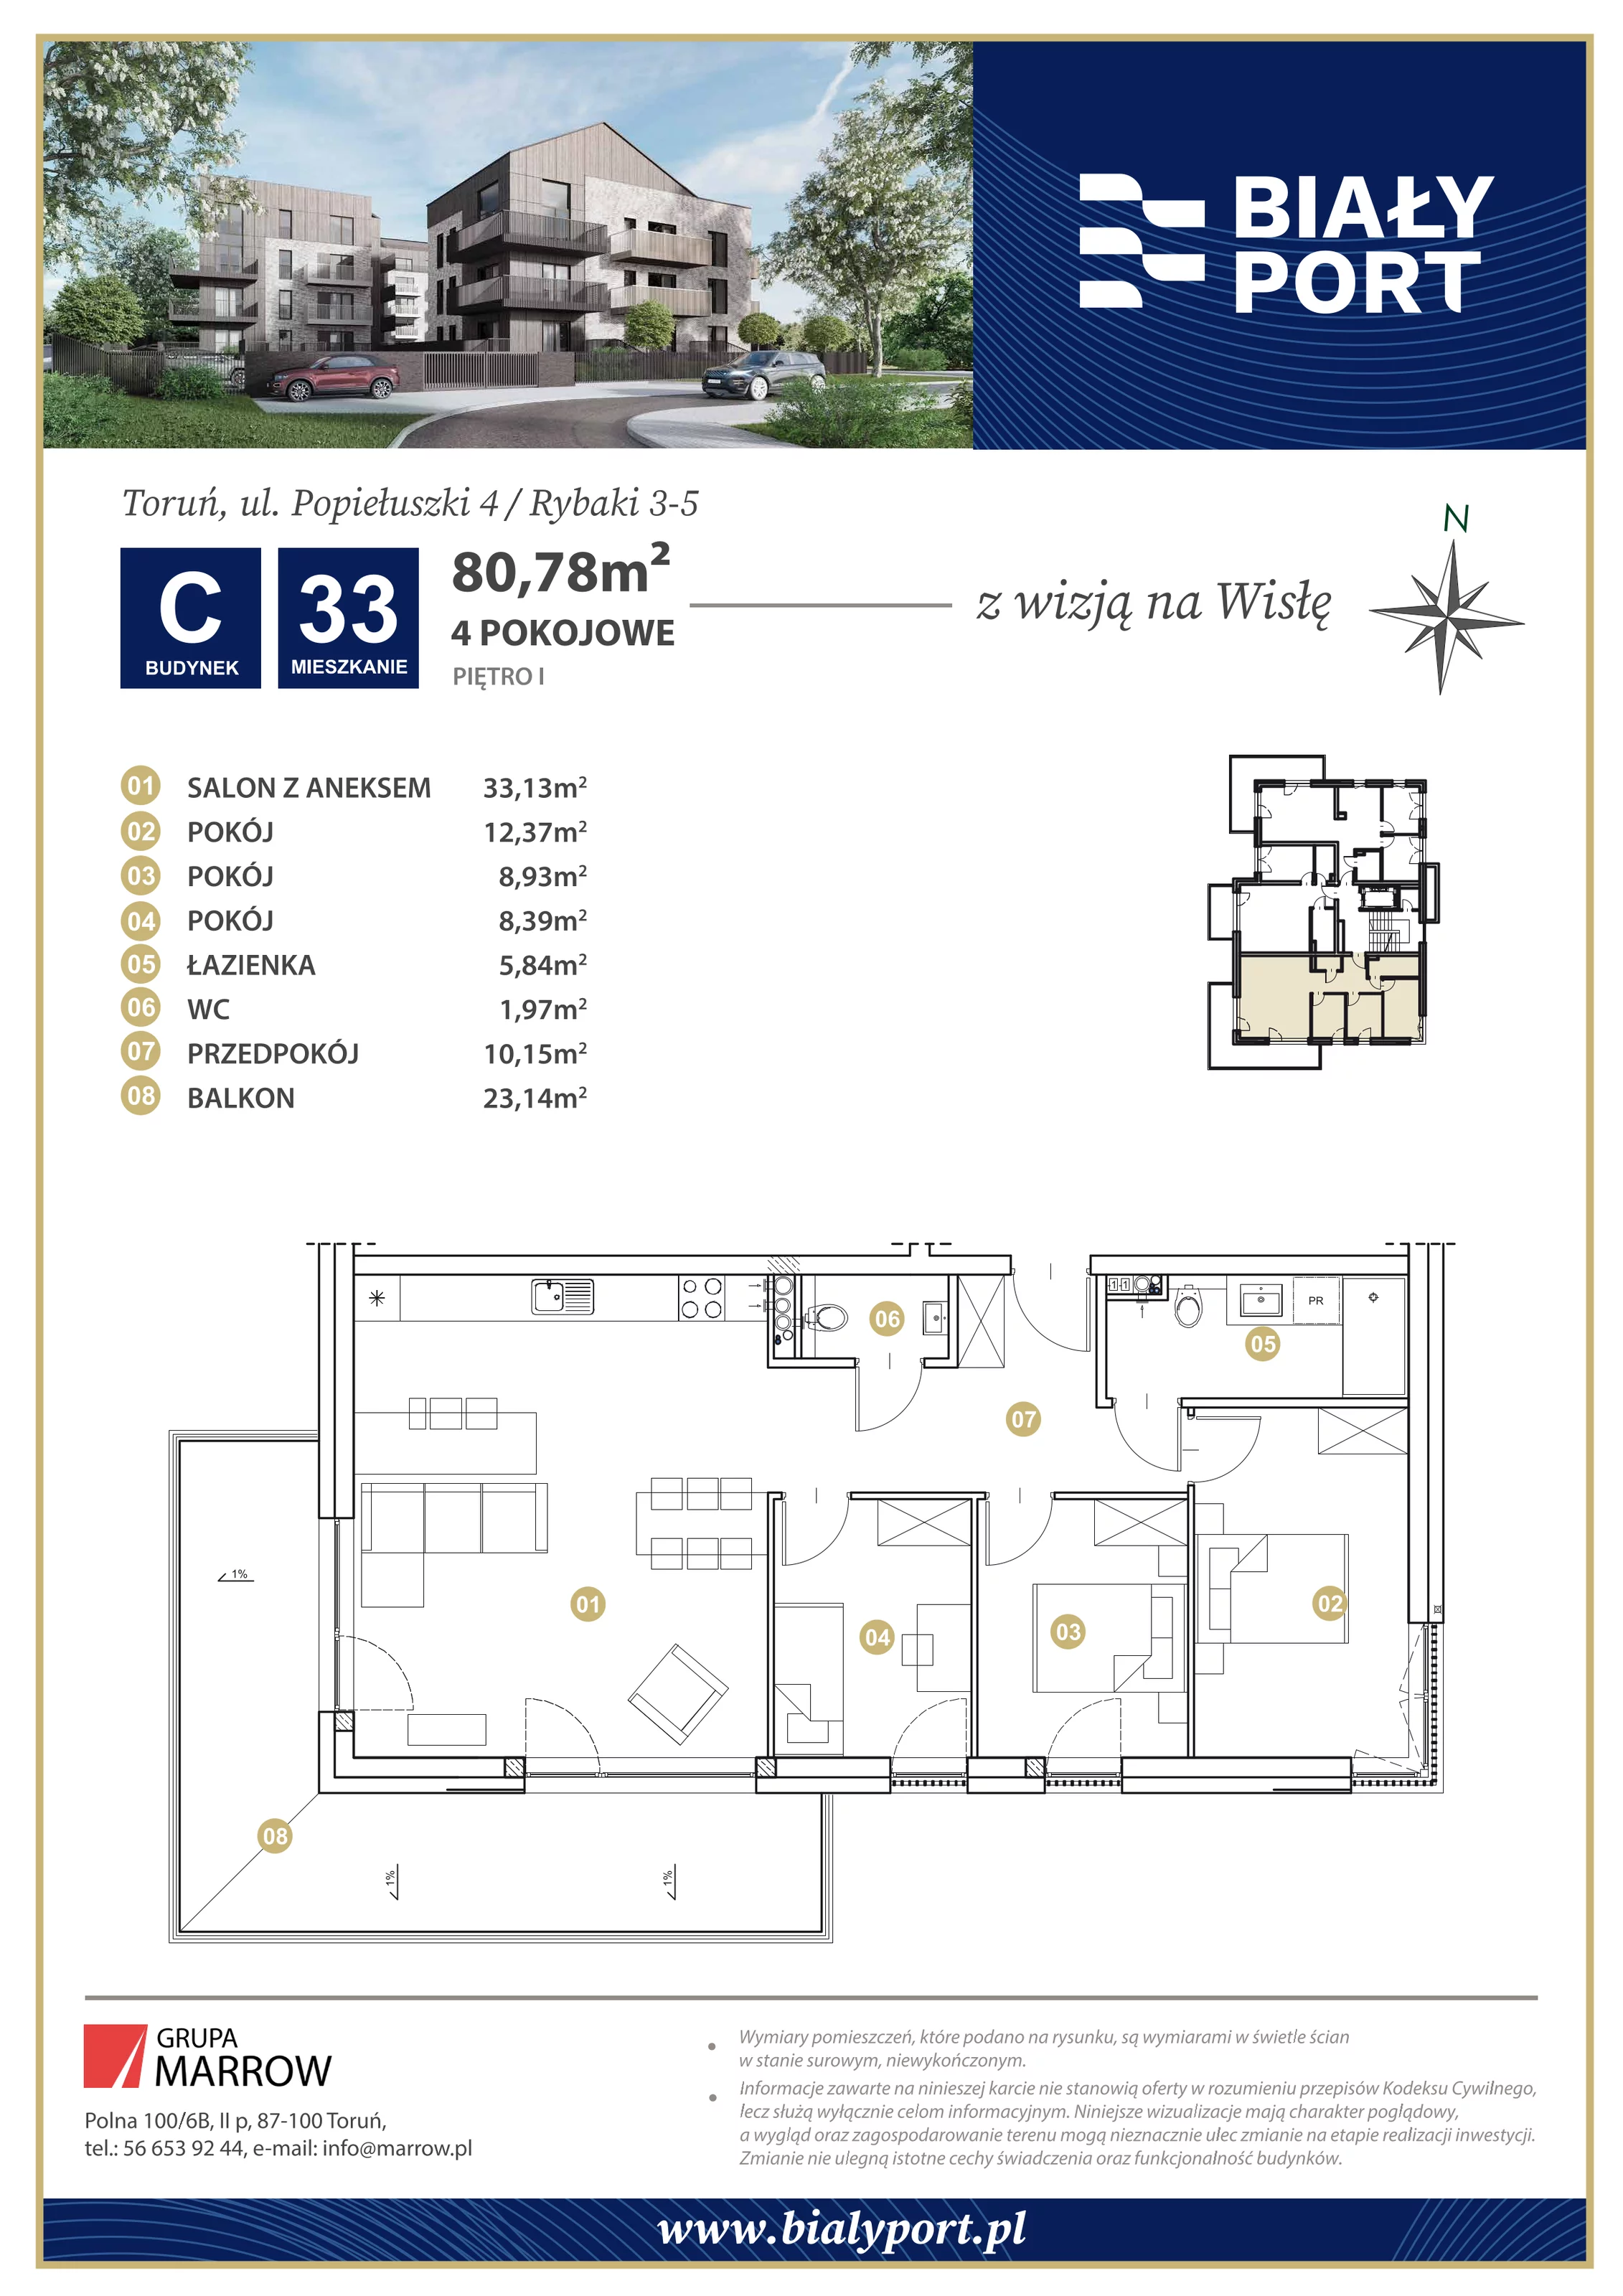 Mieszkanie 80,78 m², piętro 1, oferta nr 33, Biały Port, Toruń, Rybaki, ul. Popiełuszki 4